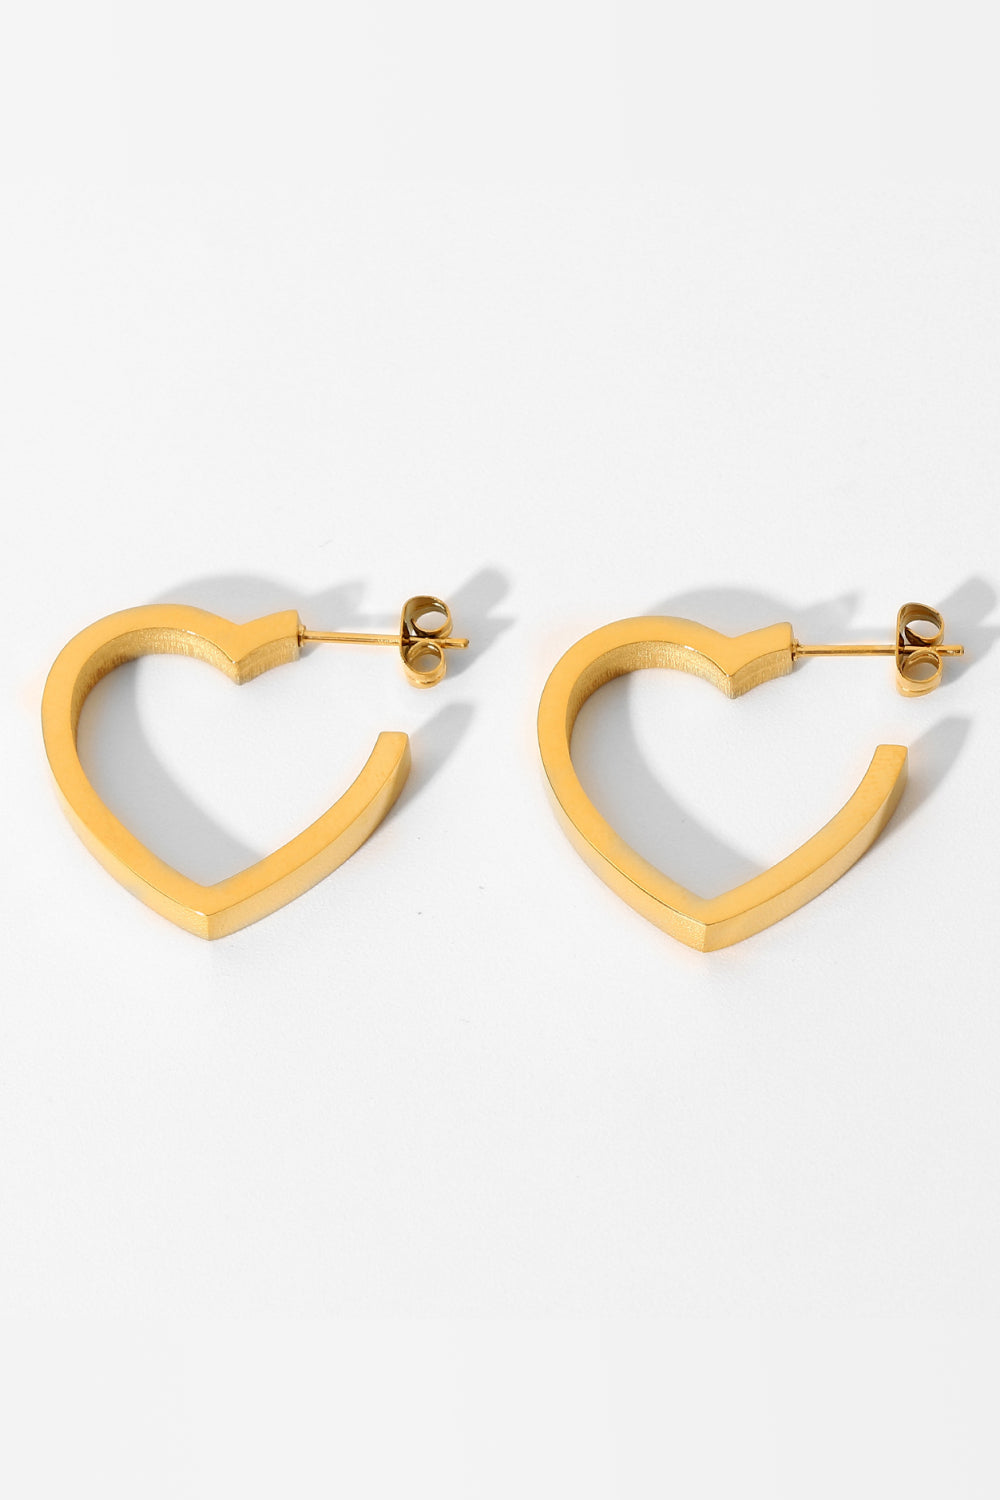 Heart-Shaped Hoop Earrings Heart-Shaped Hoop Earrings - M&R CORNER Trendsi Gold / One Size